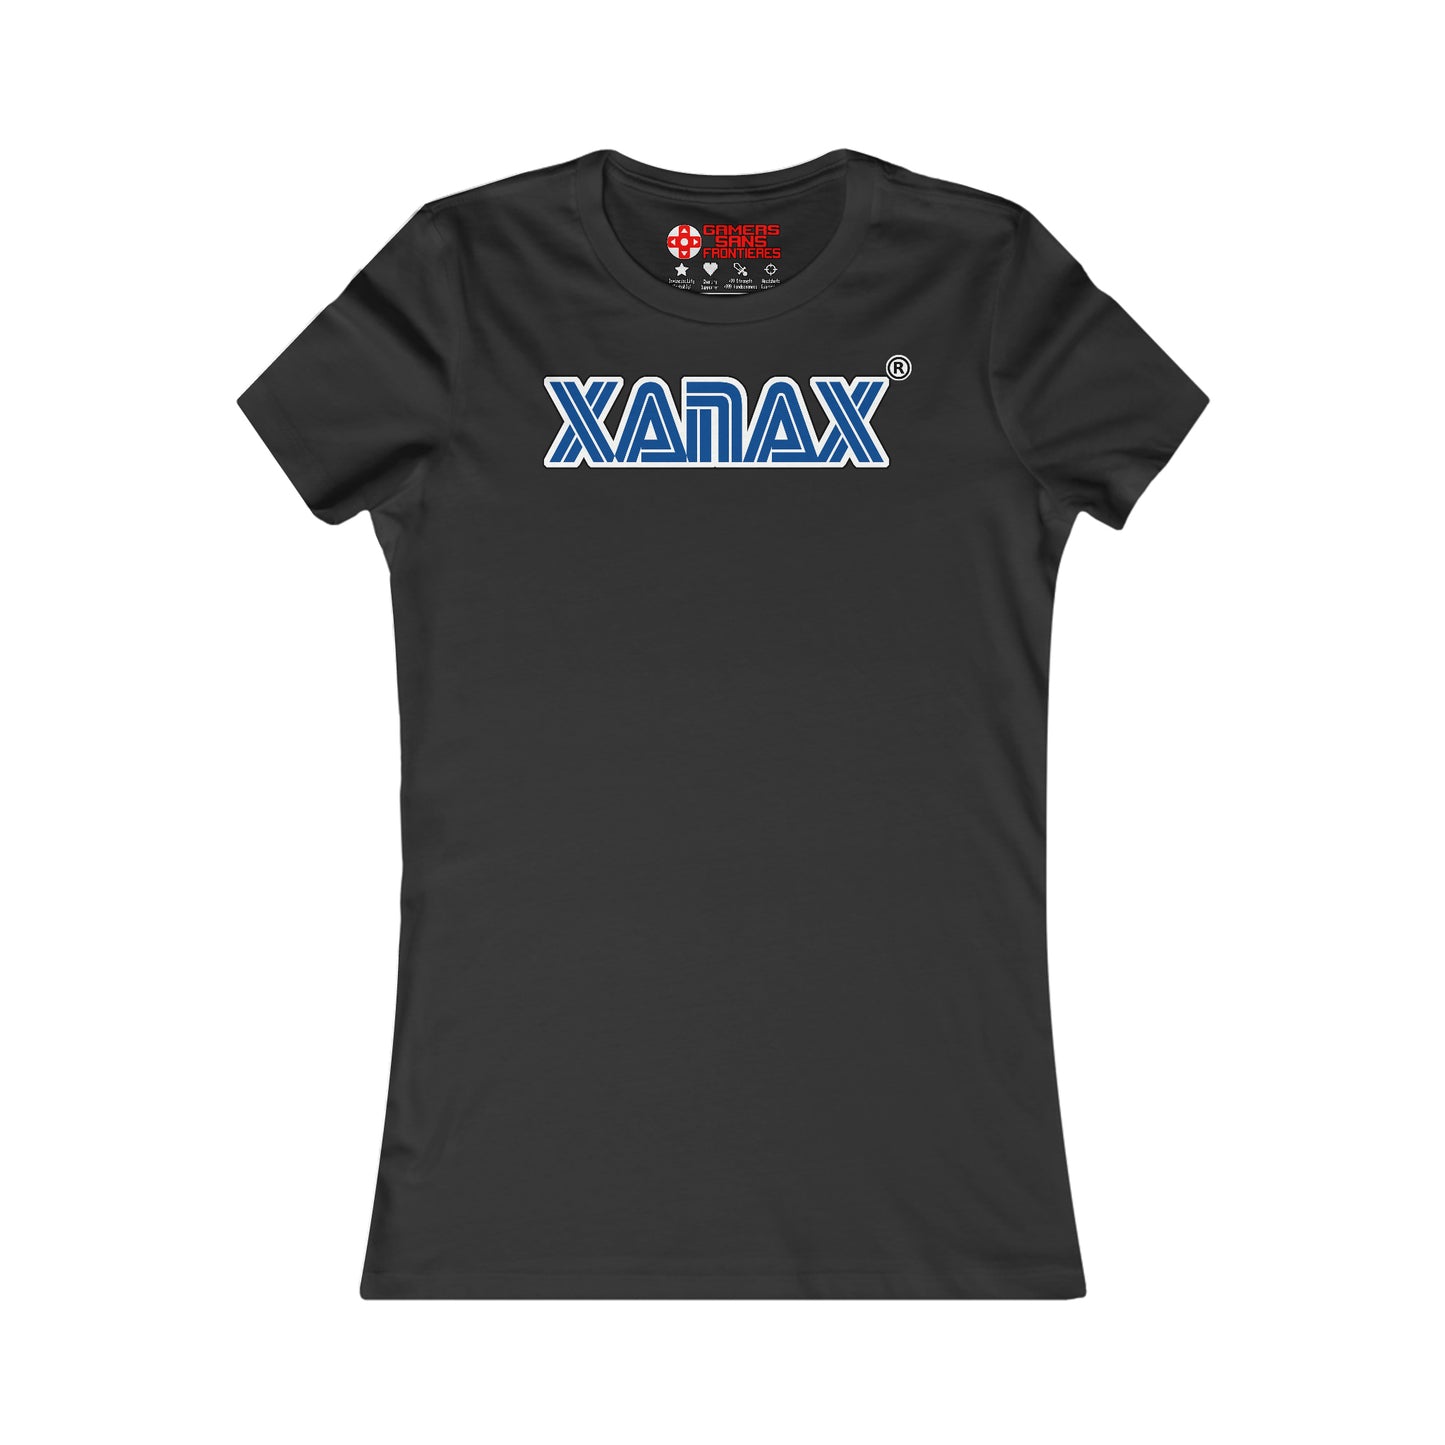 Women's Tee - XANAX